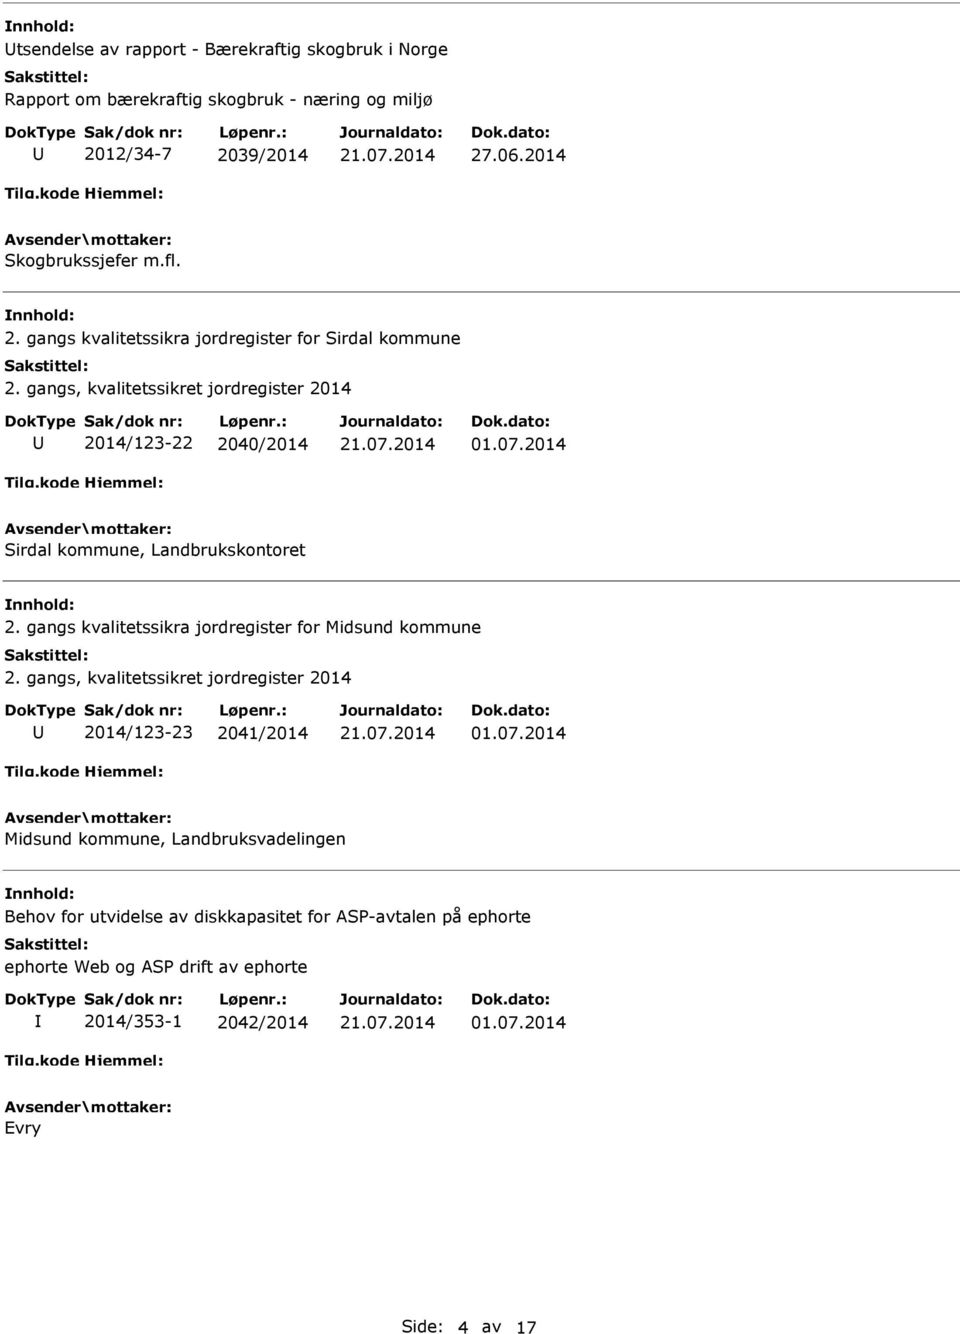 gangs kvalitetssikra jordregister for Midsund kommune 2. gangs, kvalitetssikret jordregister 2014 2014/123-23 2041/2014 01.07.